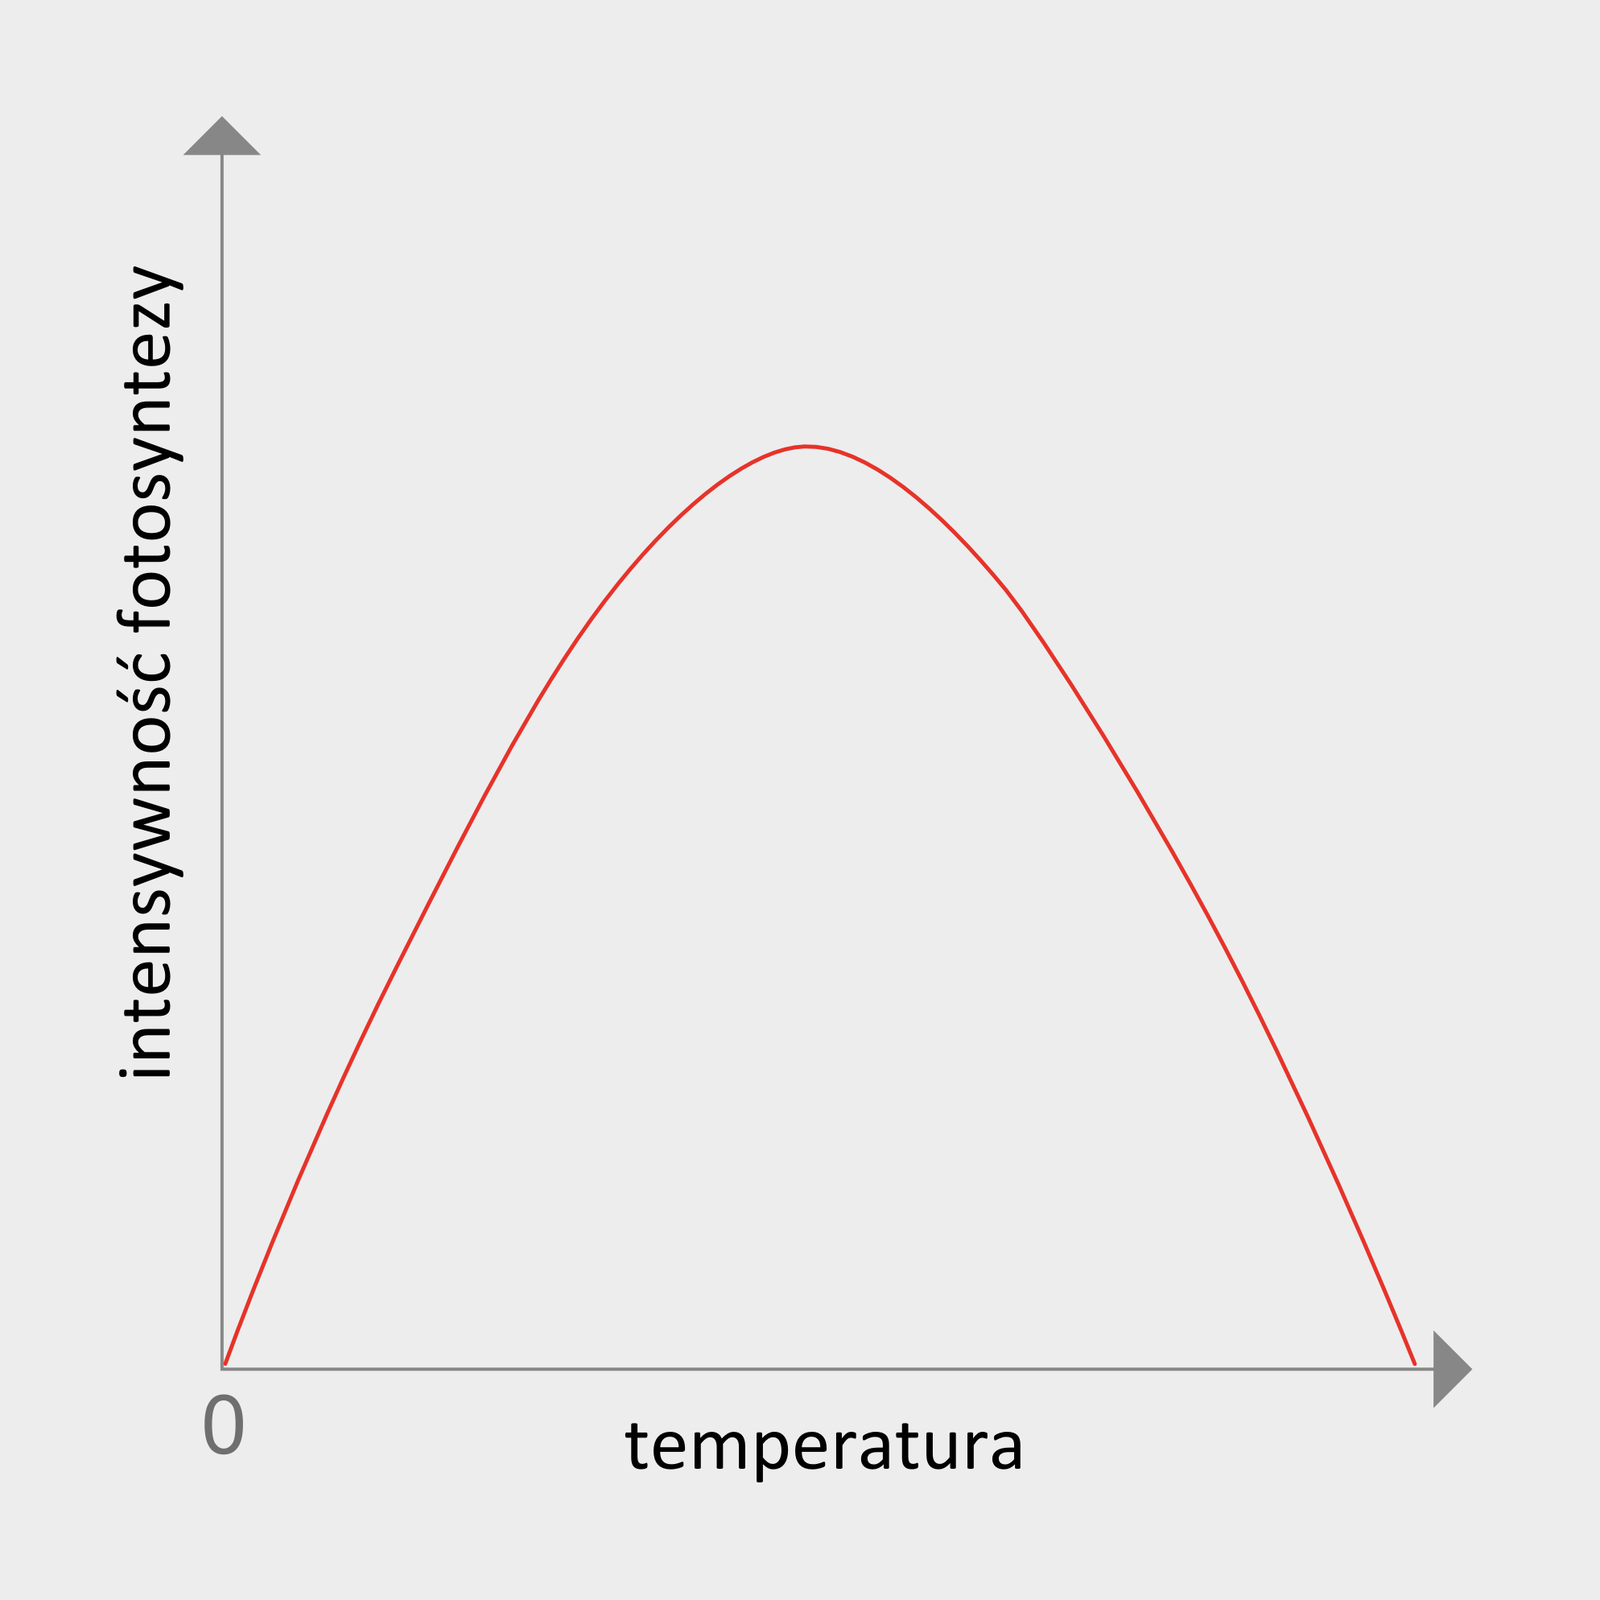 Wykres przedstawiający wpływ temperatury na intensywność fotosyntezy. Początkowo intensywność fotosyntezy rośnie wraz ze wzrostem temperatury, by po przekroczeniu wartości granicznej zacząć spadać.